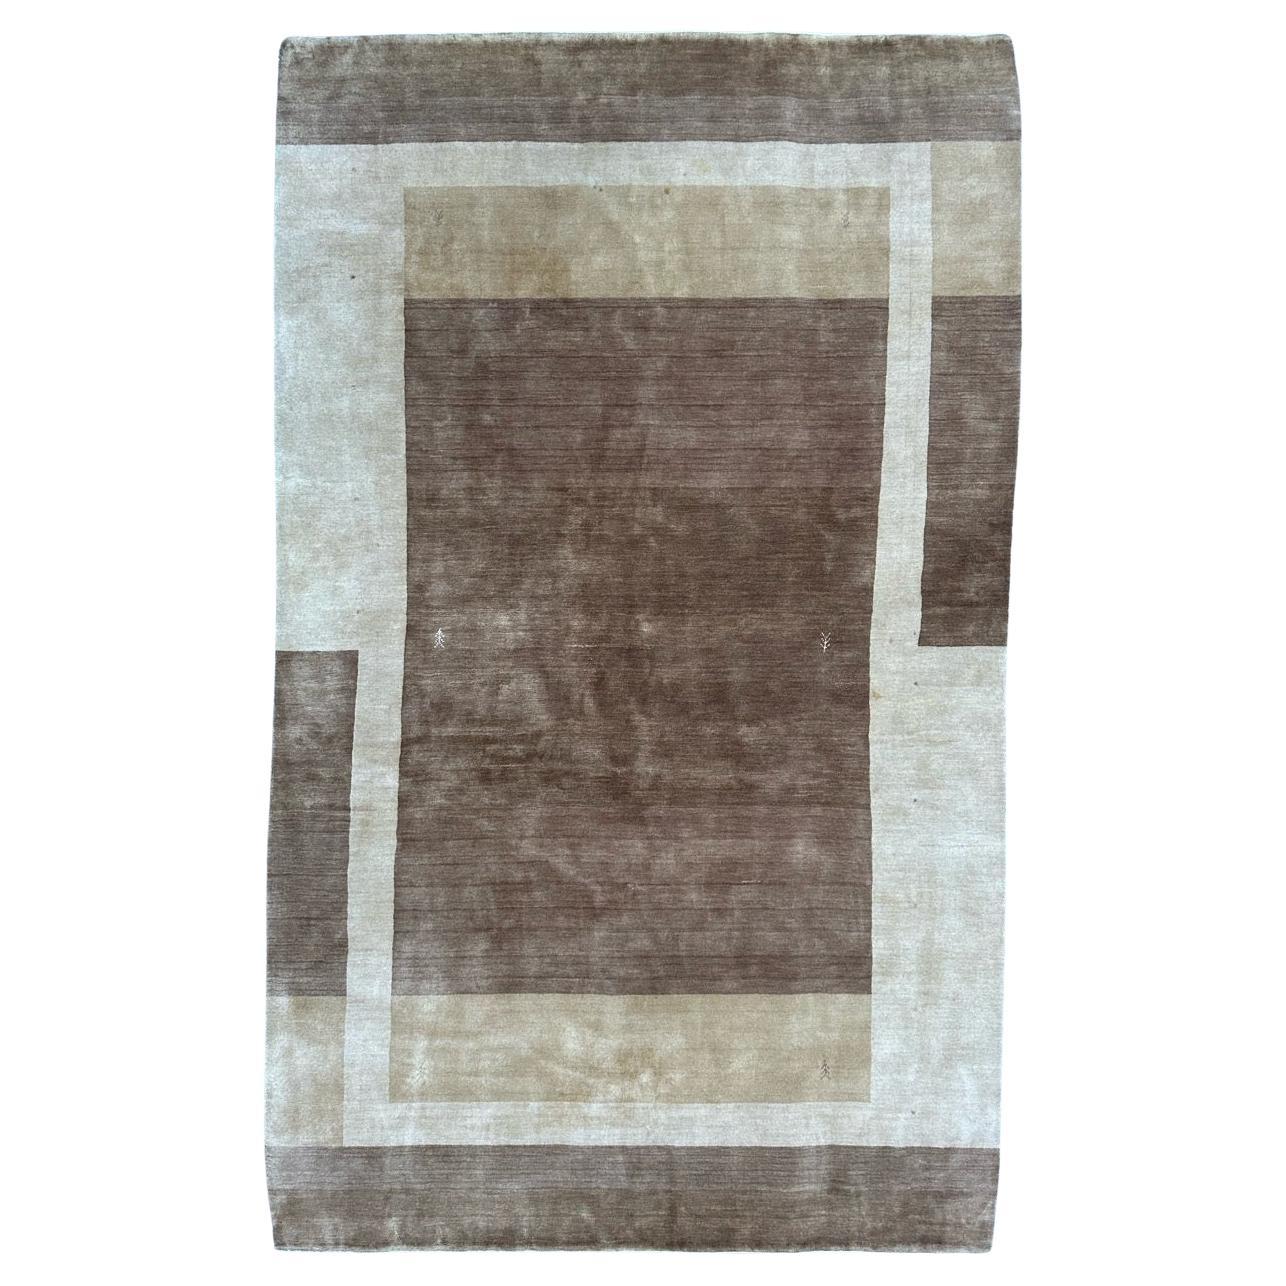 Bobyrug’s Nice vintage Scandinavian modern design rug For Sale